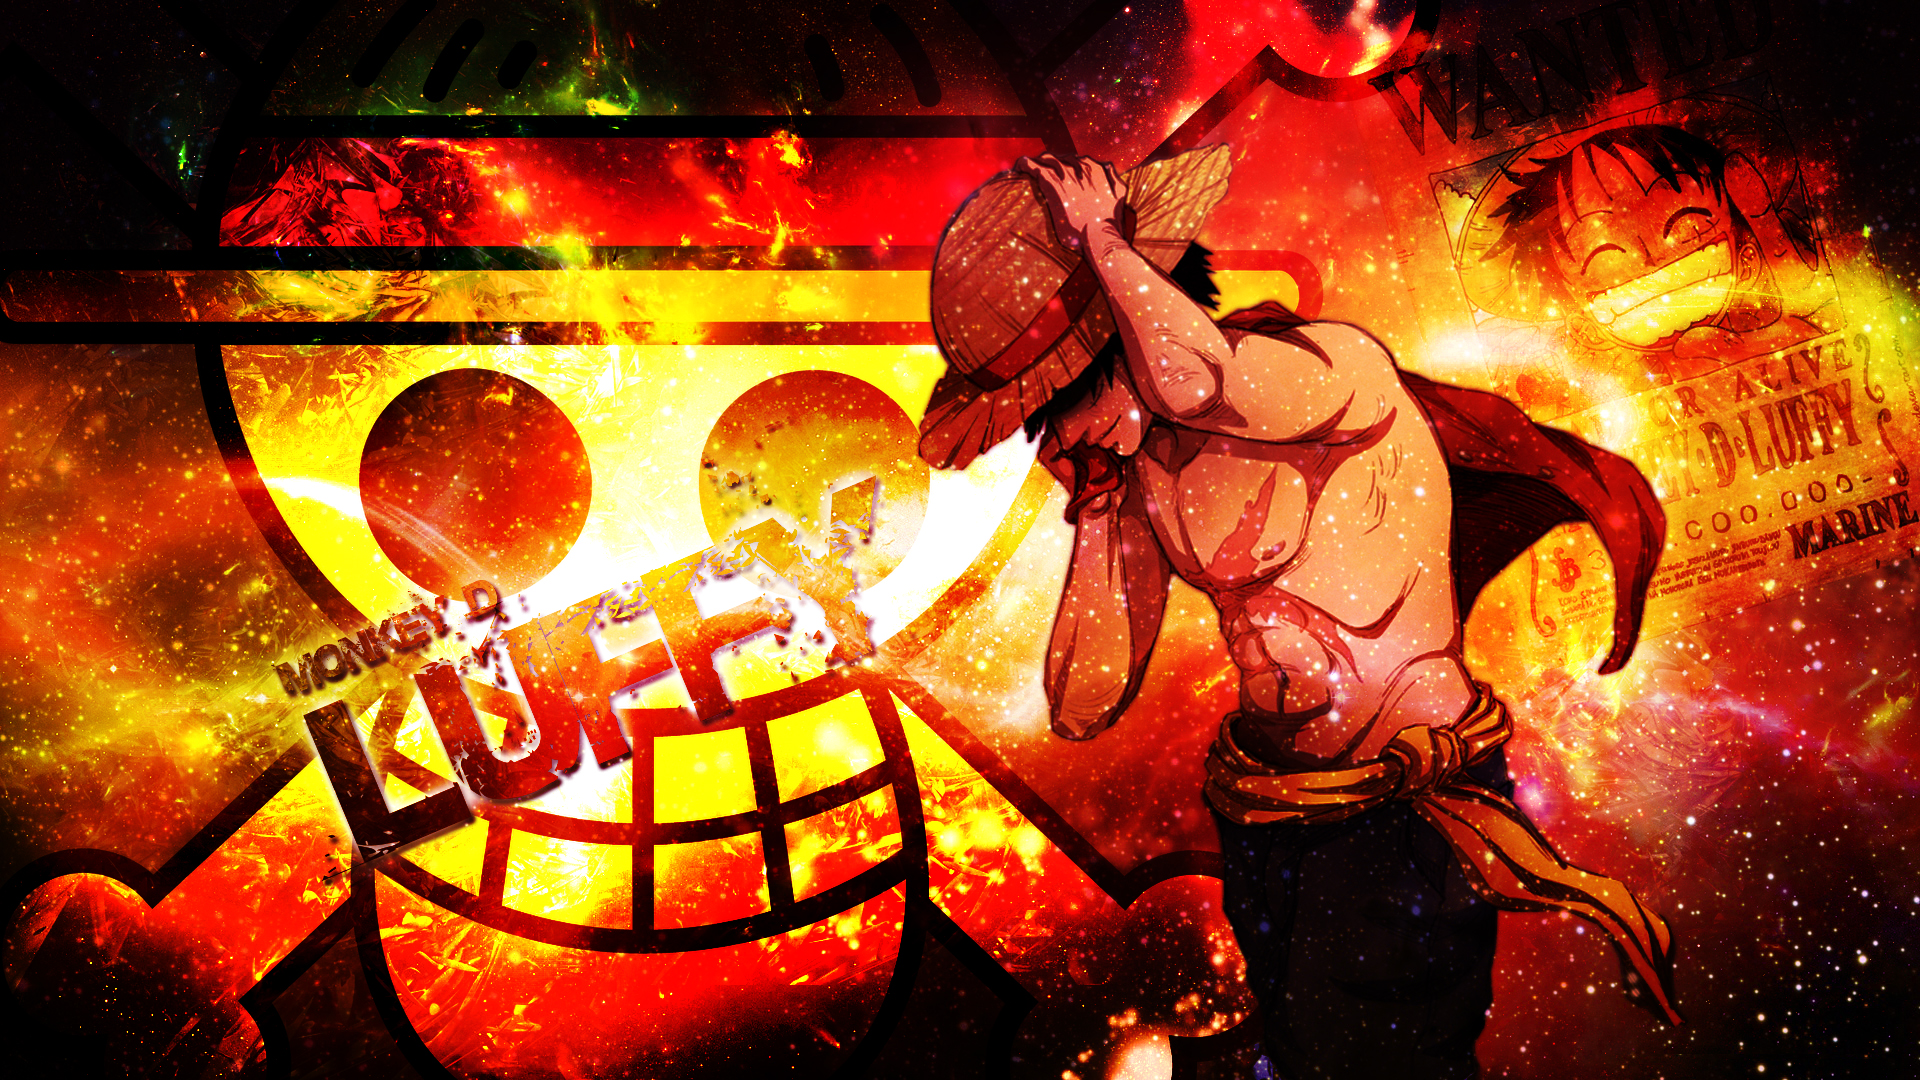 Hãy cùng chiêm ngưỡng bức hình nền độ phân giải cao One Piece HD Wallpaper đẹp lộng lẫy với những nhân vật quen thuộc như Luffy, Zoro, Sanji,…được thiết kế tinh tế và sắc nét đến từng chi tiết.